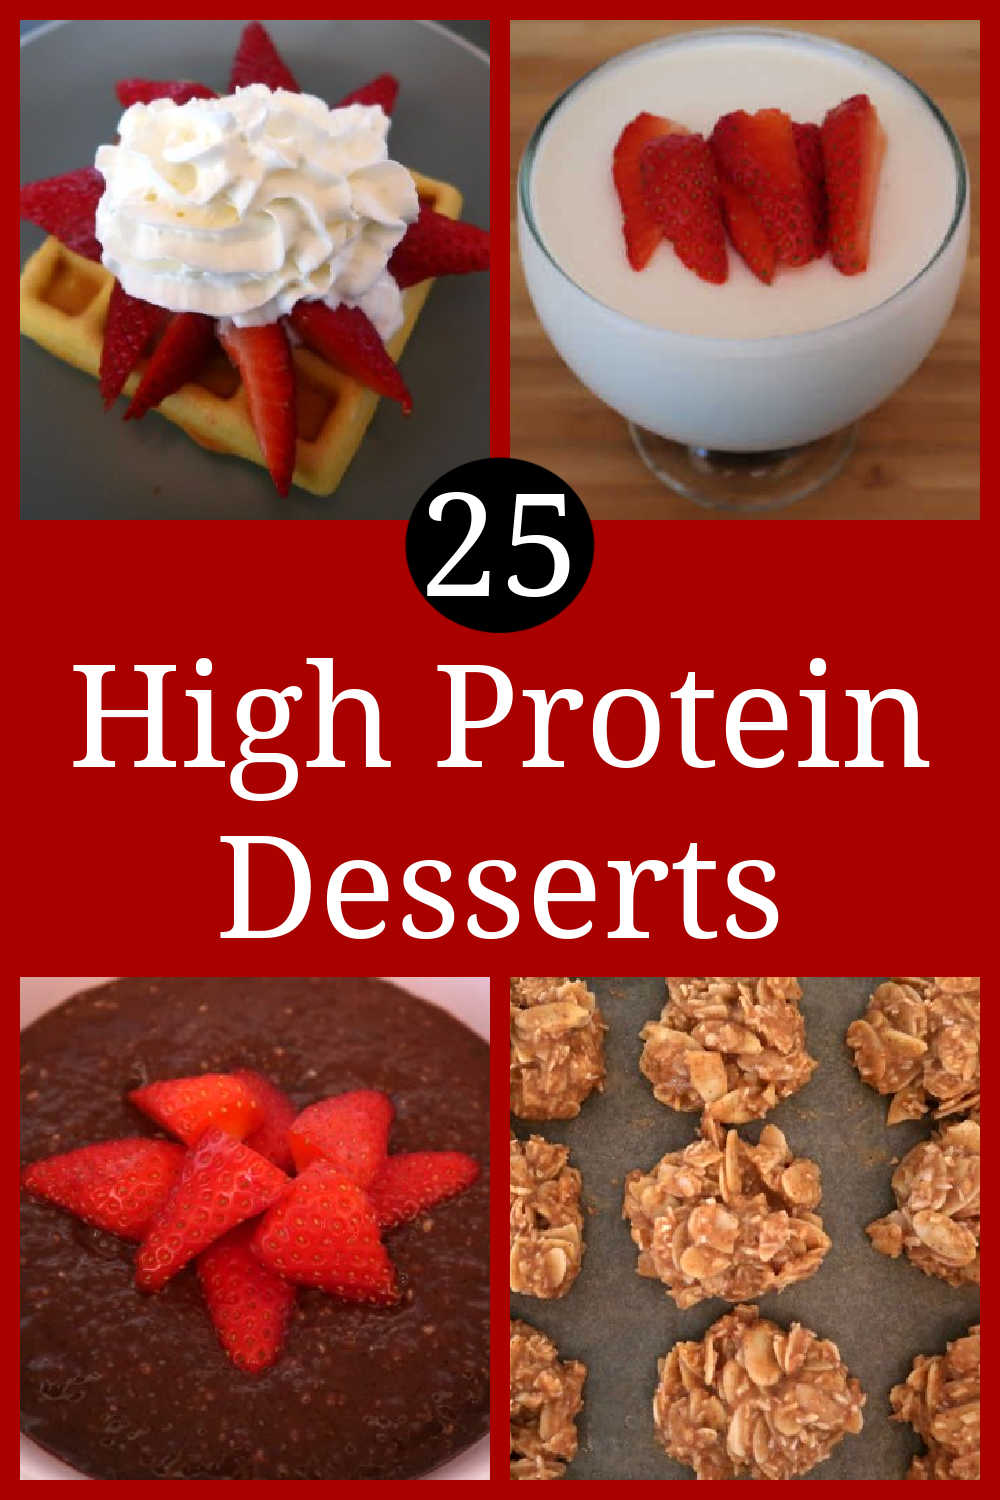 25 proteinreiche Desserts - So bereiten Sie die besten einfachen Dessertrezepte zu, die wenig Kohlenhydrate enthalten, mit gesundem Protein gefüllt sind und Ihre Naschkatzen befriedigen.